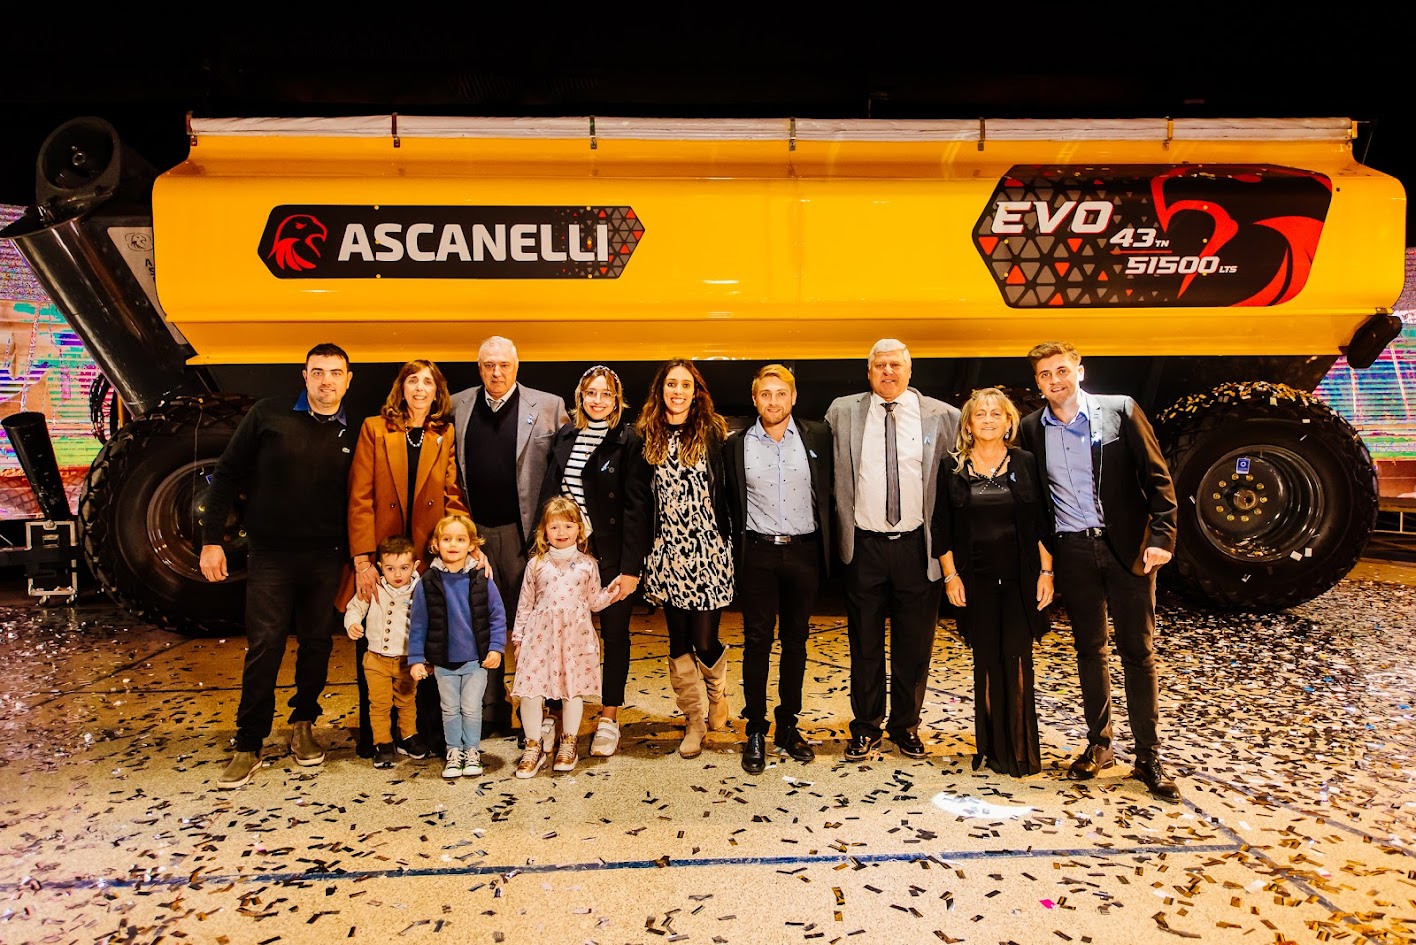 Los Agusti vincularon el lanzamiento de EVo 43 con el cumpleaños de nuestro fundador “Don Ricardo Ascanelli”